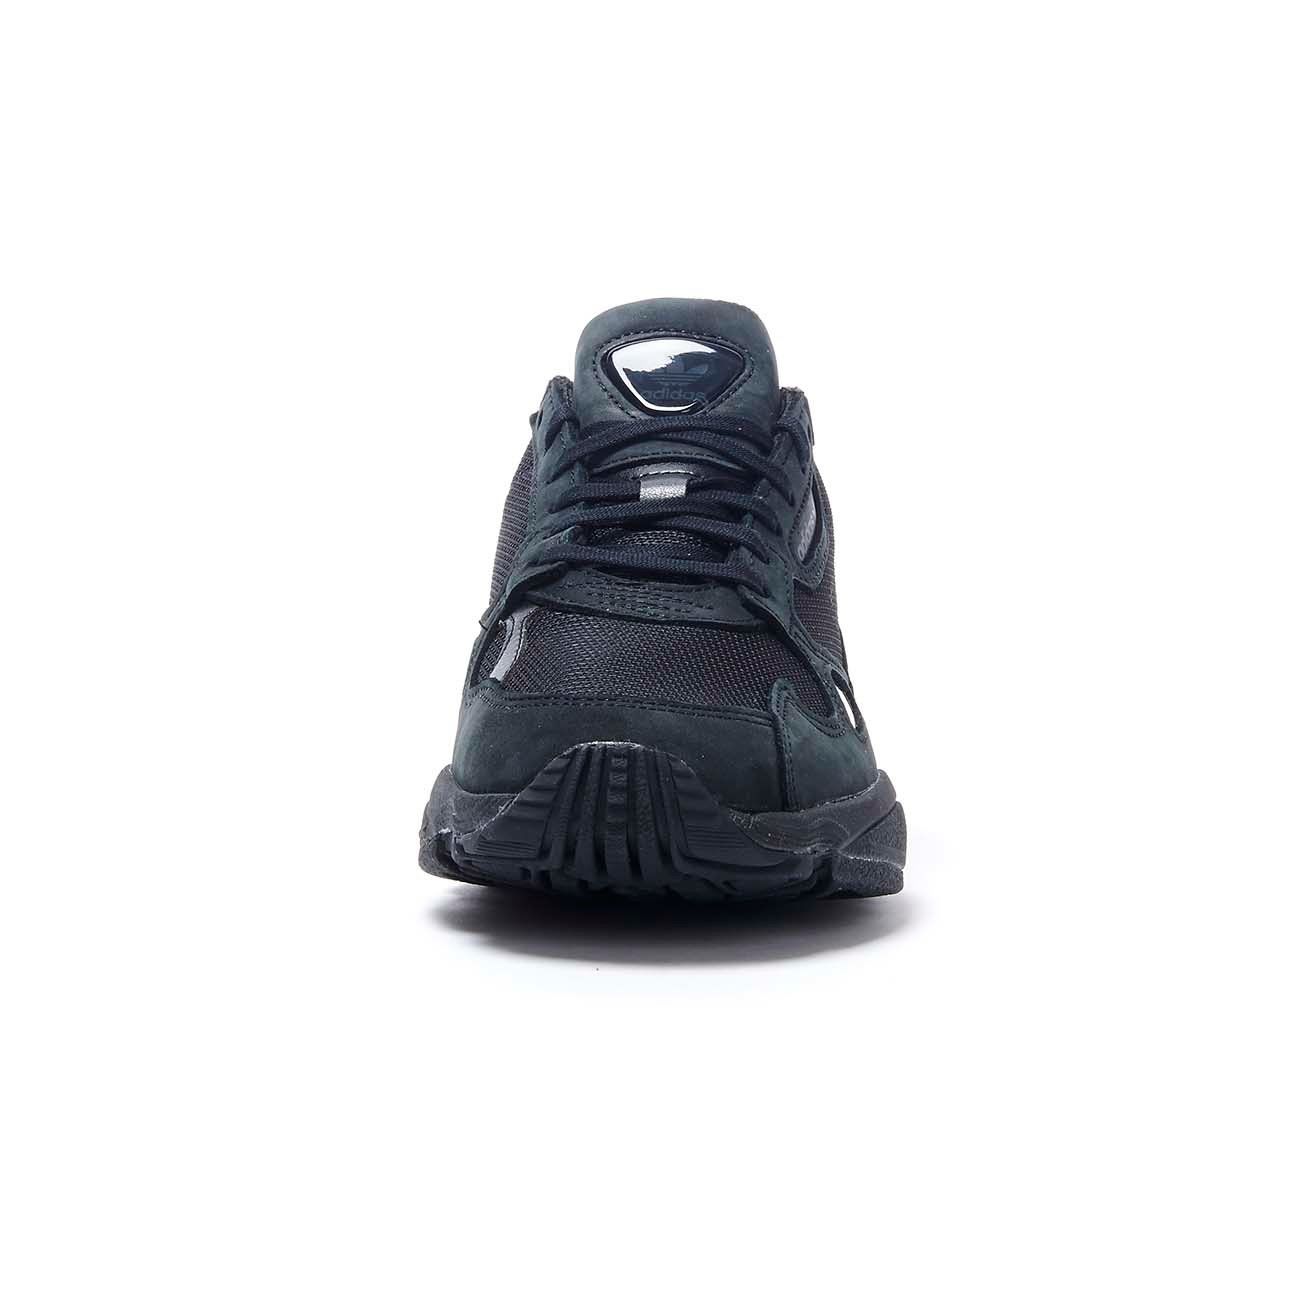 Adidas Originals Falcon Black Sneakers 6938088.htm - Buy Adidas Originals  Falcon Black Sneakers 6938088.htm online in India